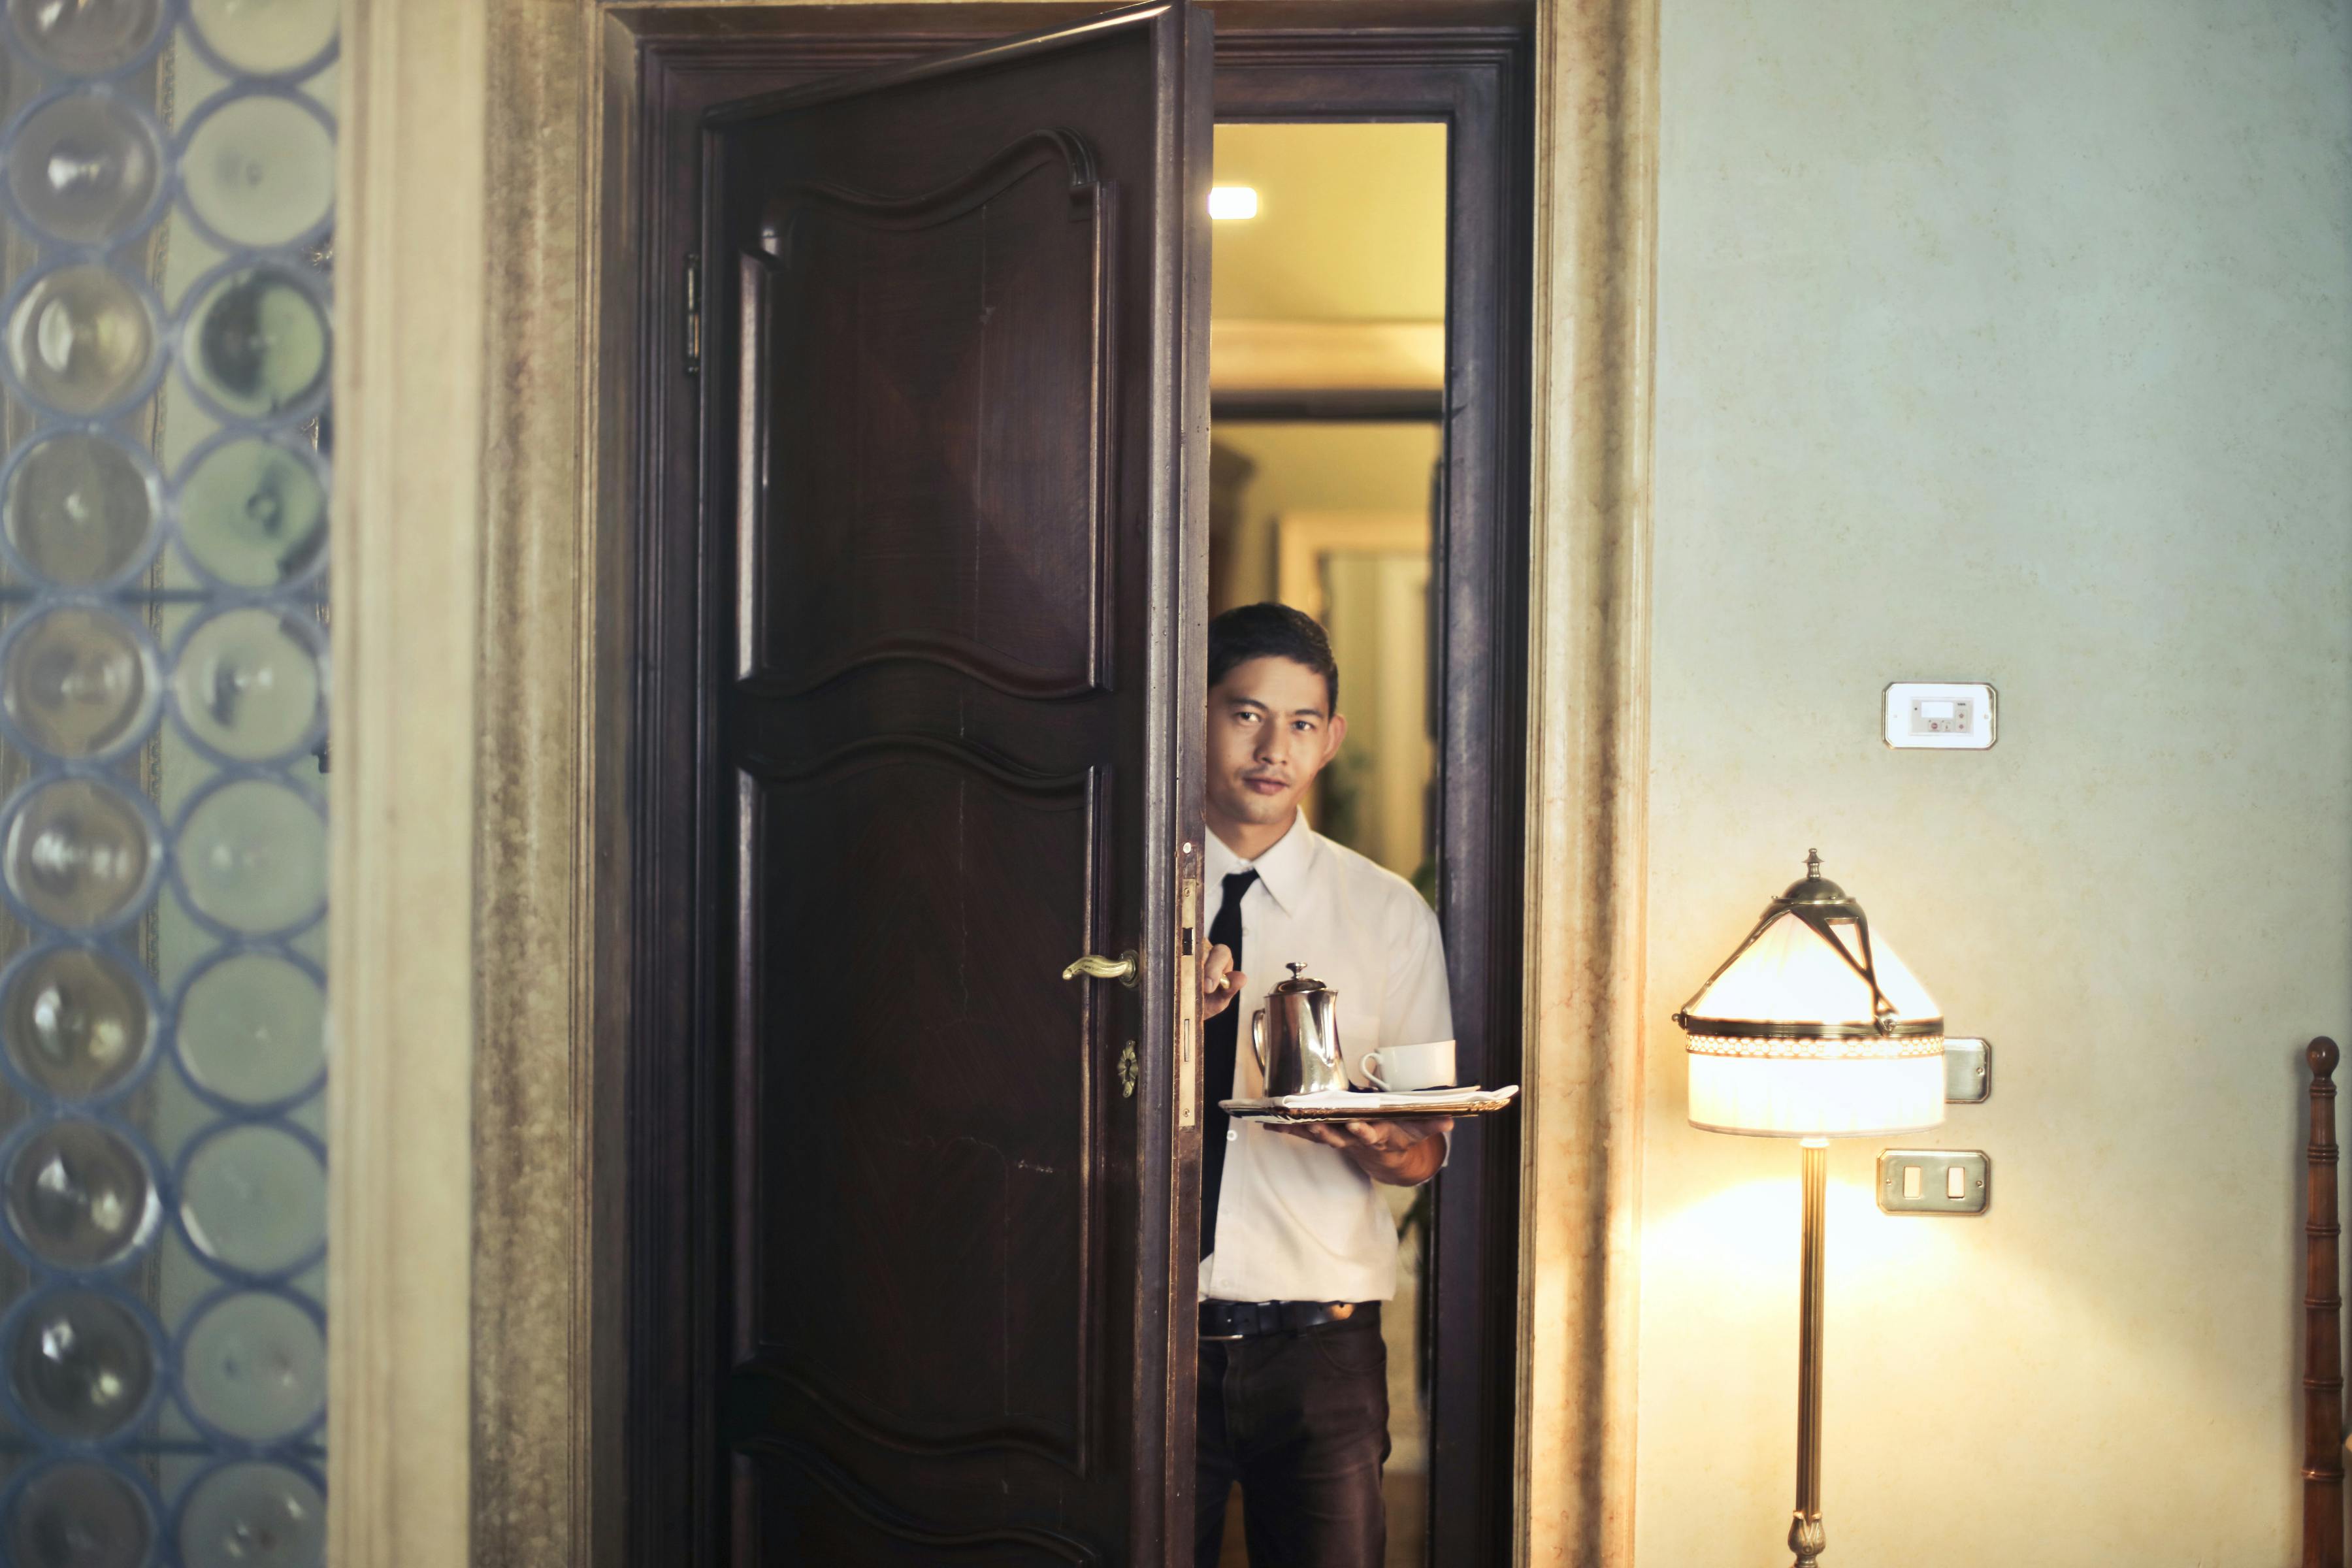 Directeur d'hôtel entrant dans une chambre | Source : Pexels